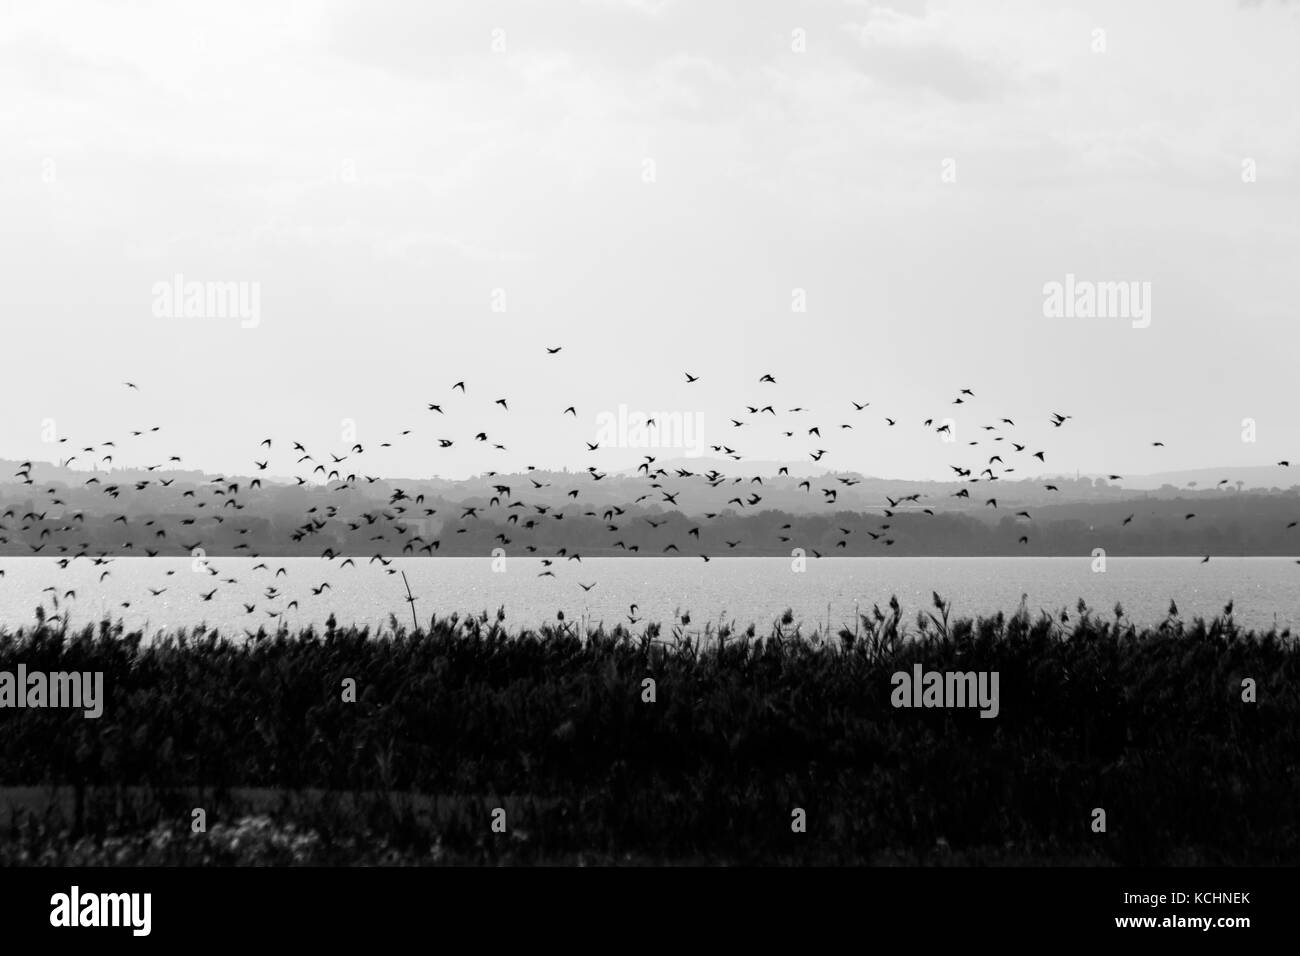 Une volée d'oiseaux volant au-dessus d'un lac, avec des plantes et de la végétation en premier plan et collines au loin à l'avant-plan Banque D'Images